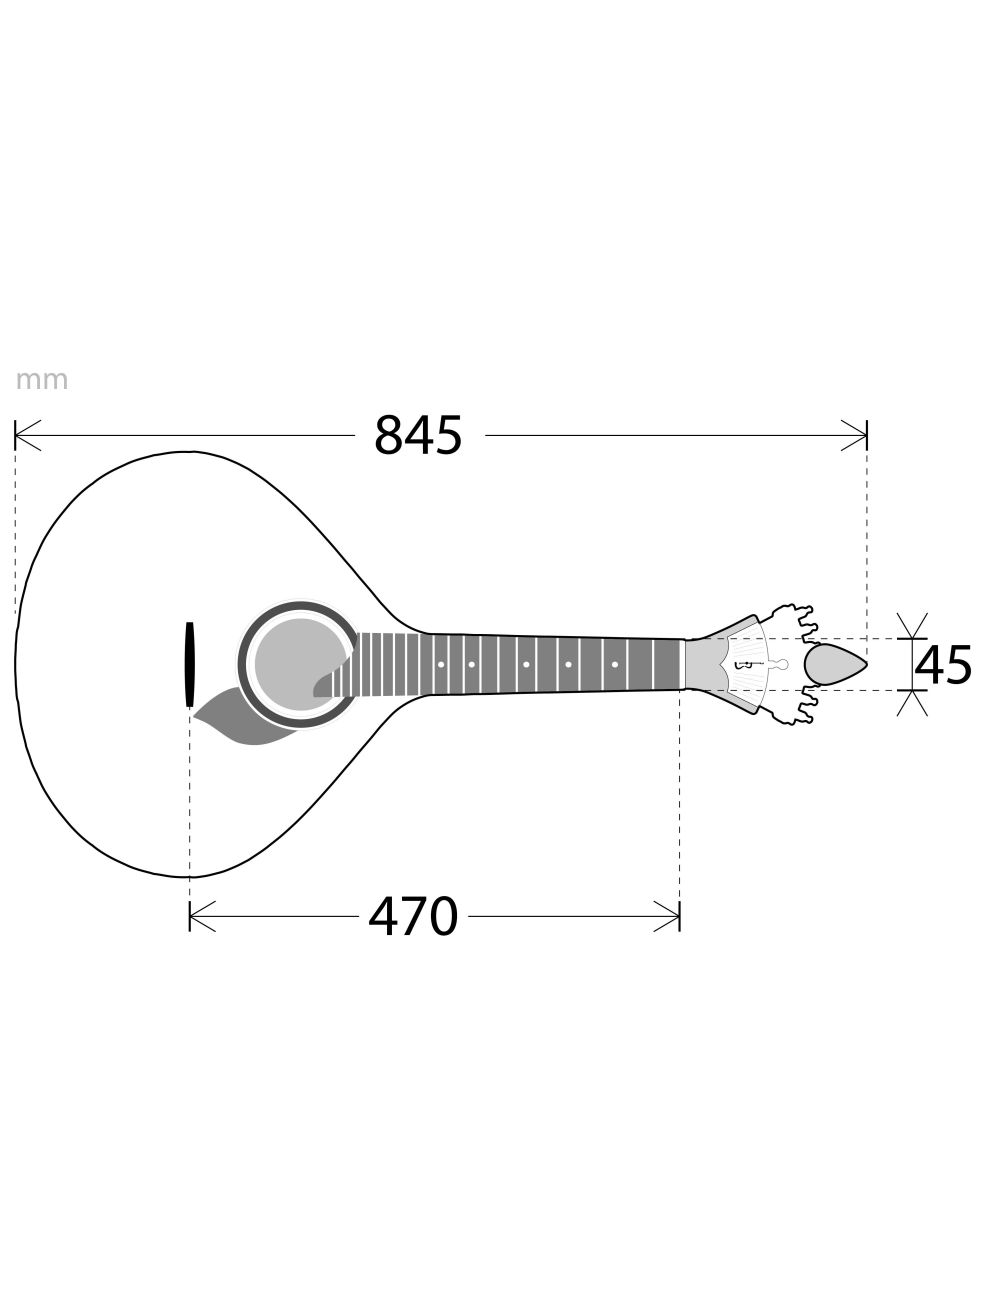 APC 305-LS Portuguese guitar APC 305-LS Other Stringed